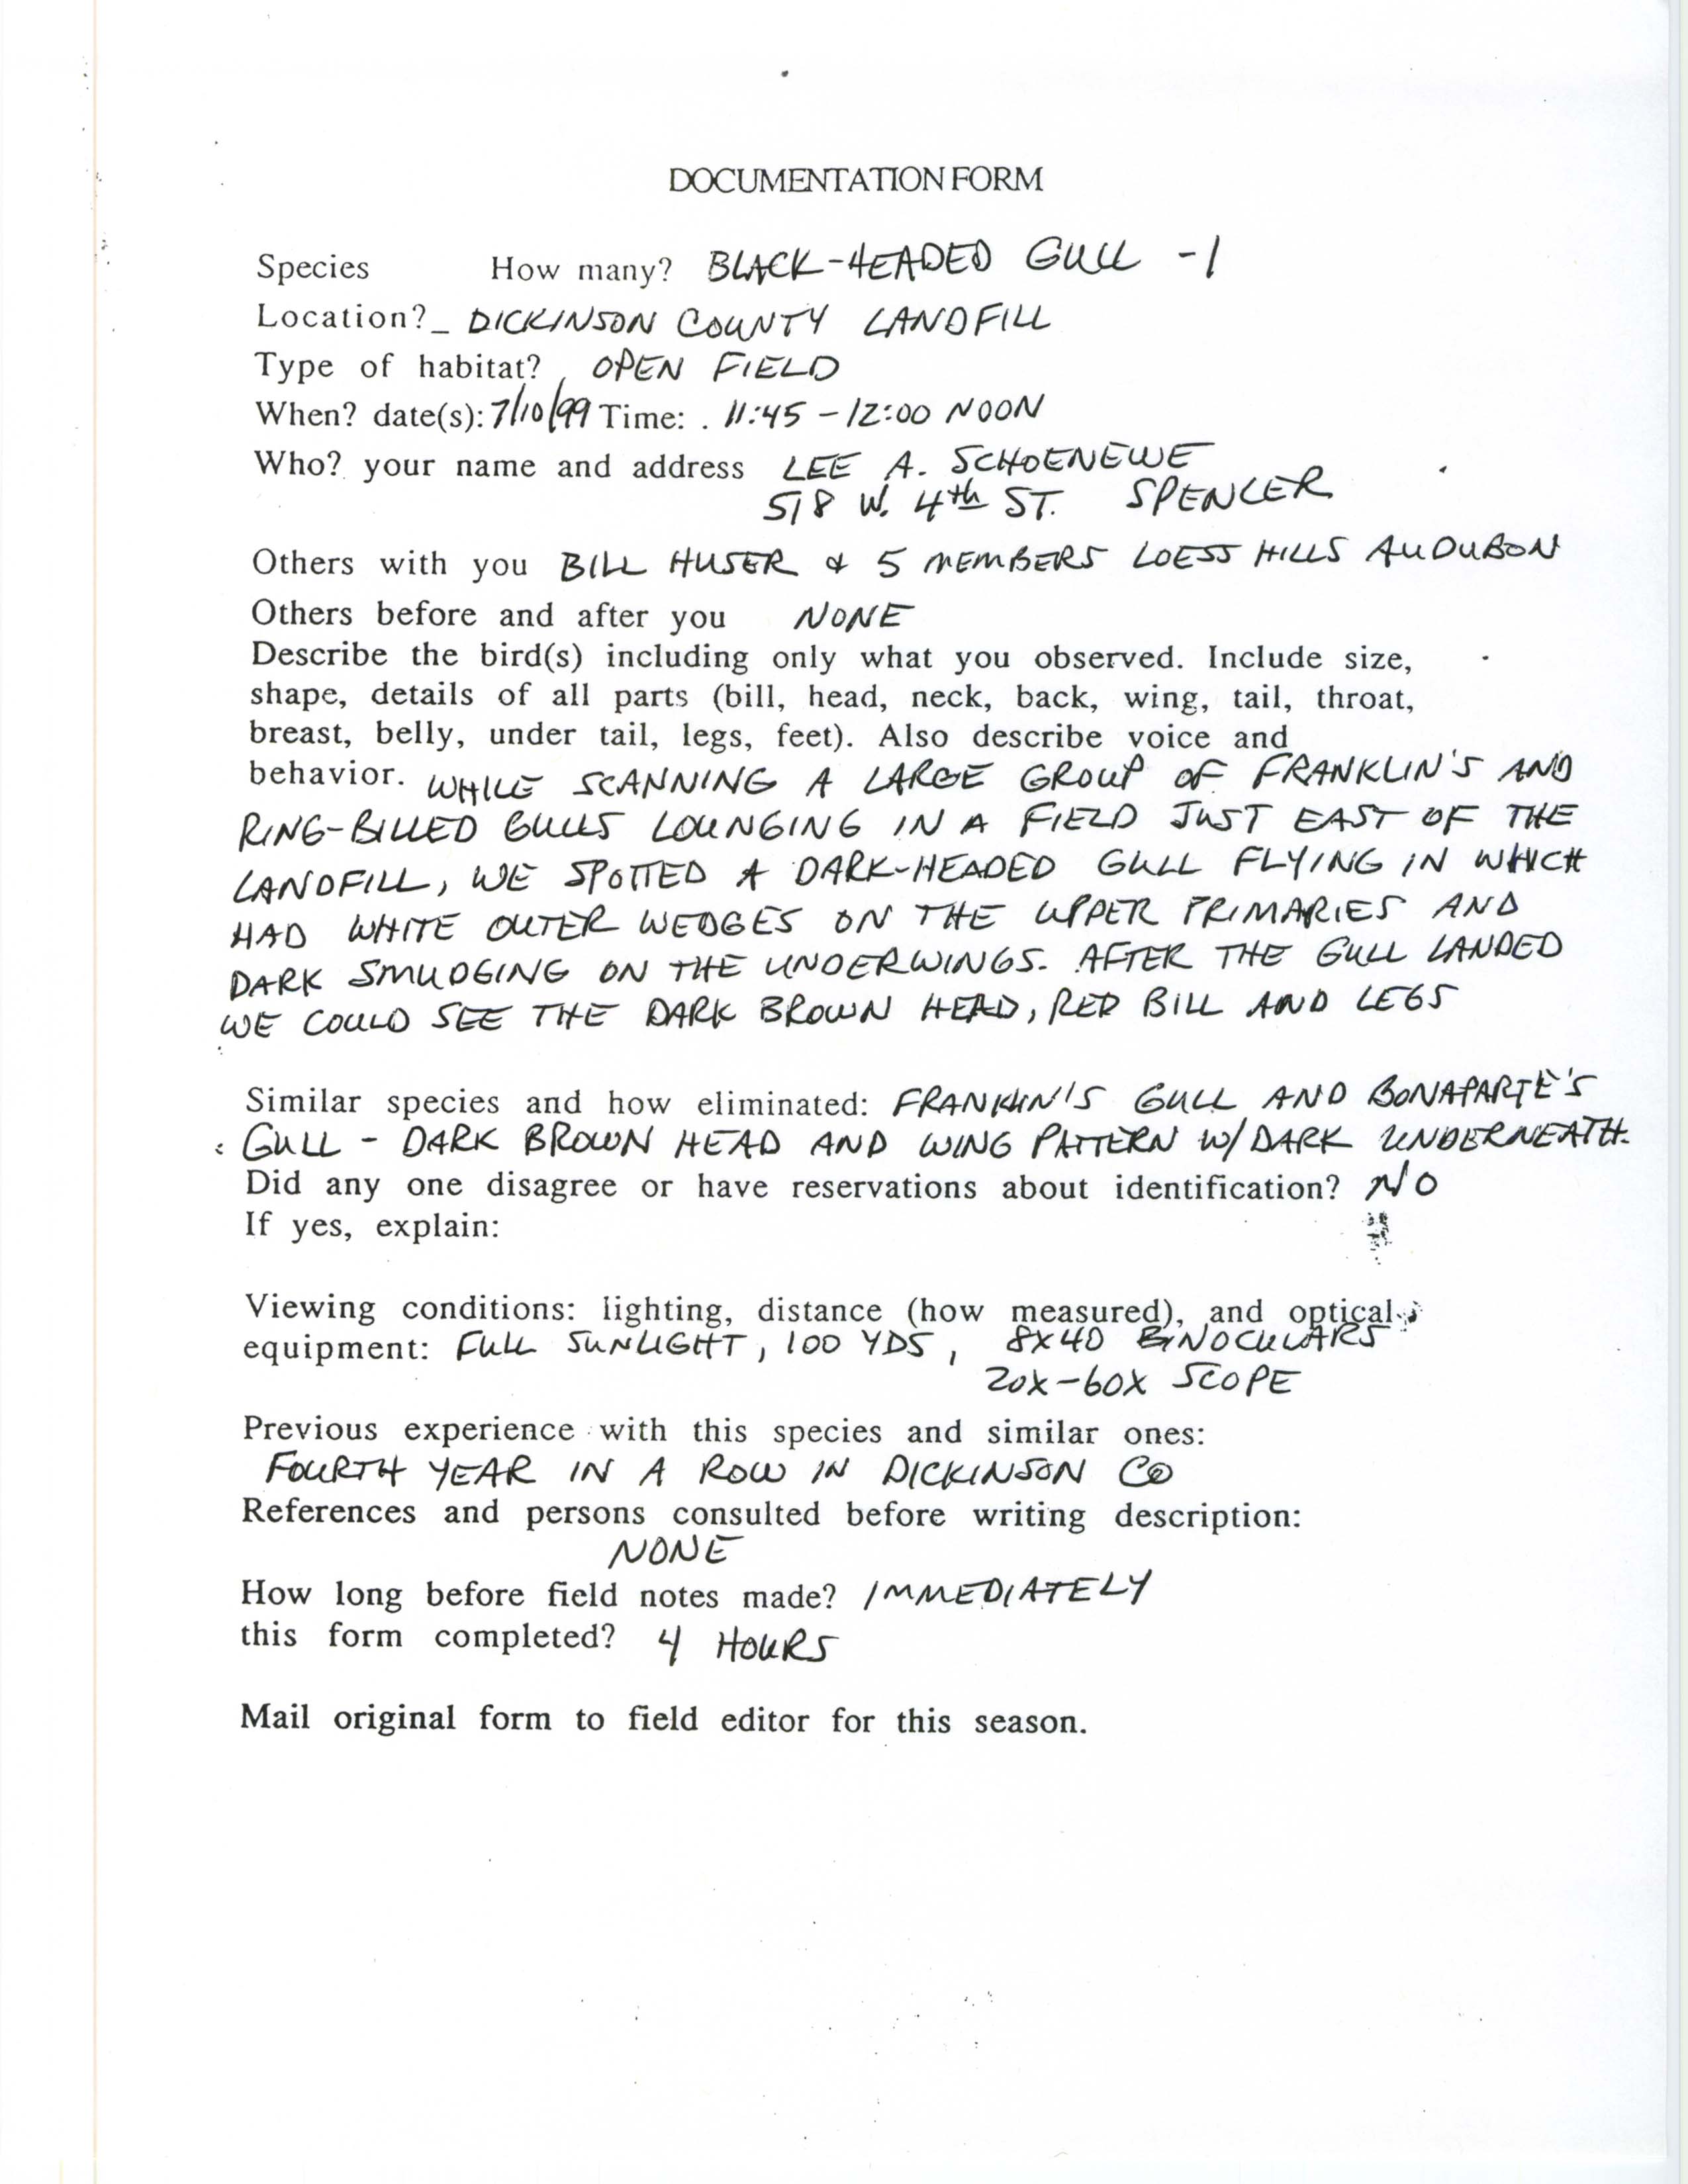 Documentation form, Black-headed Gull, July 10, 1999, Lee Schoenewe